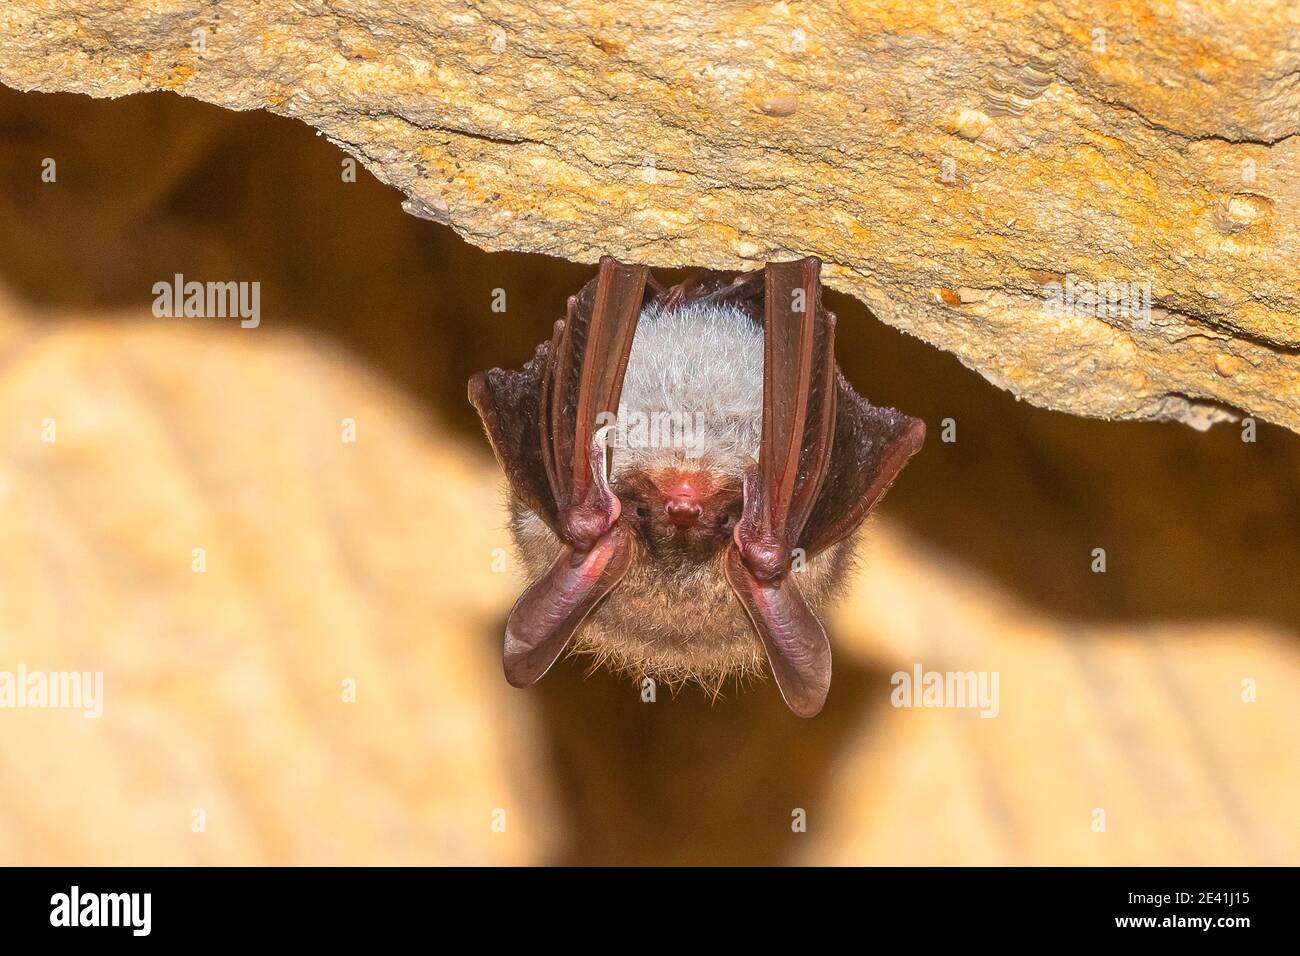 La chauve-souris de Bechstein (Myotis bechsteinii), perchée dans une grotte du Mont Saint Pierre, en Belgique Banque D'Images